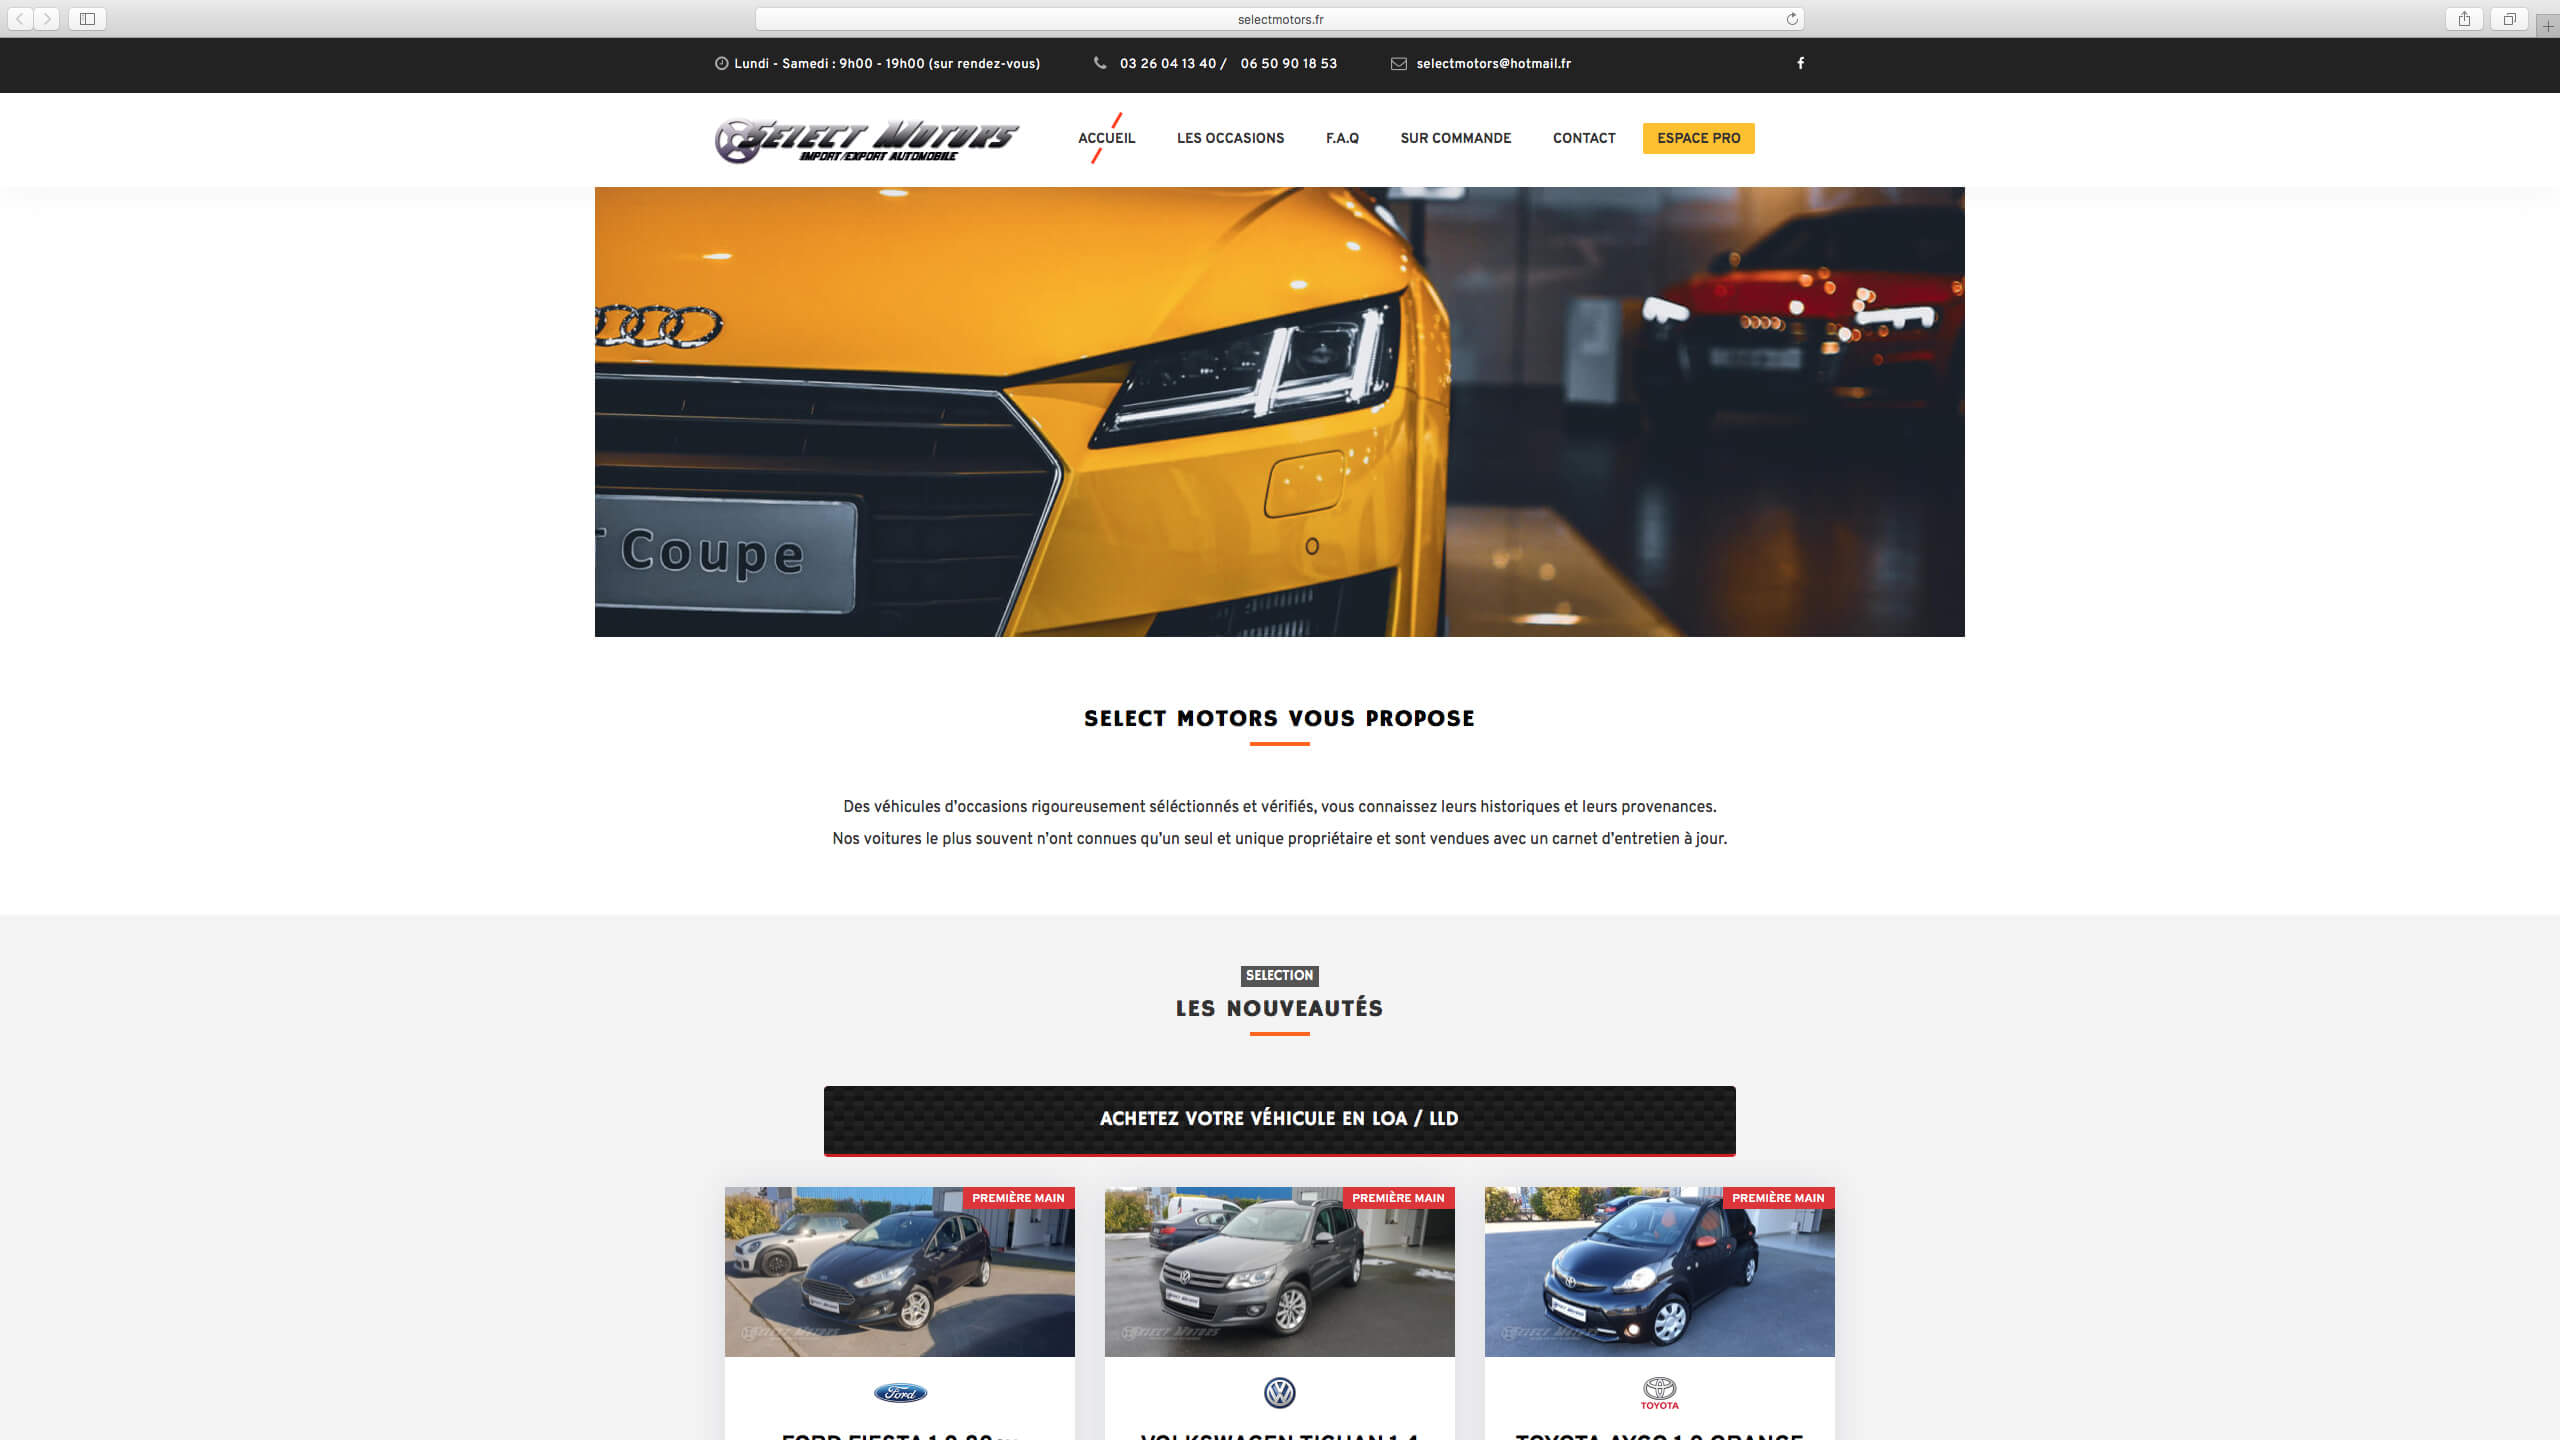 Capture d'écran du site internet Select Motors réalisé par Kevin de Sousa